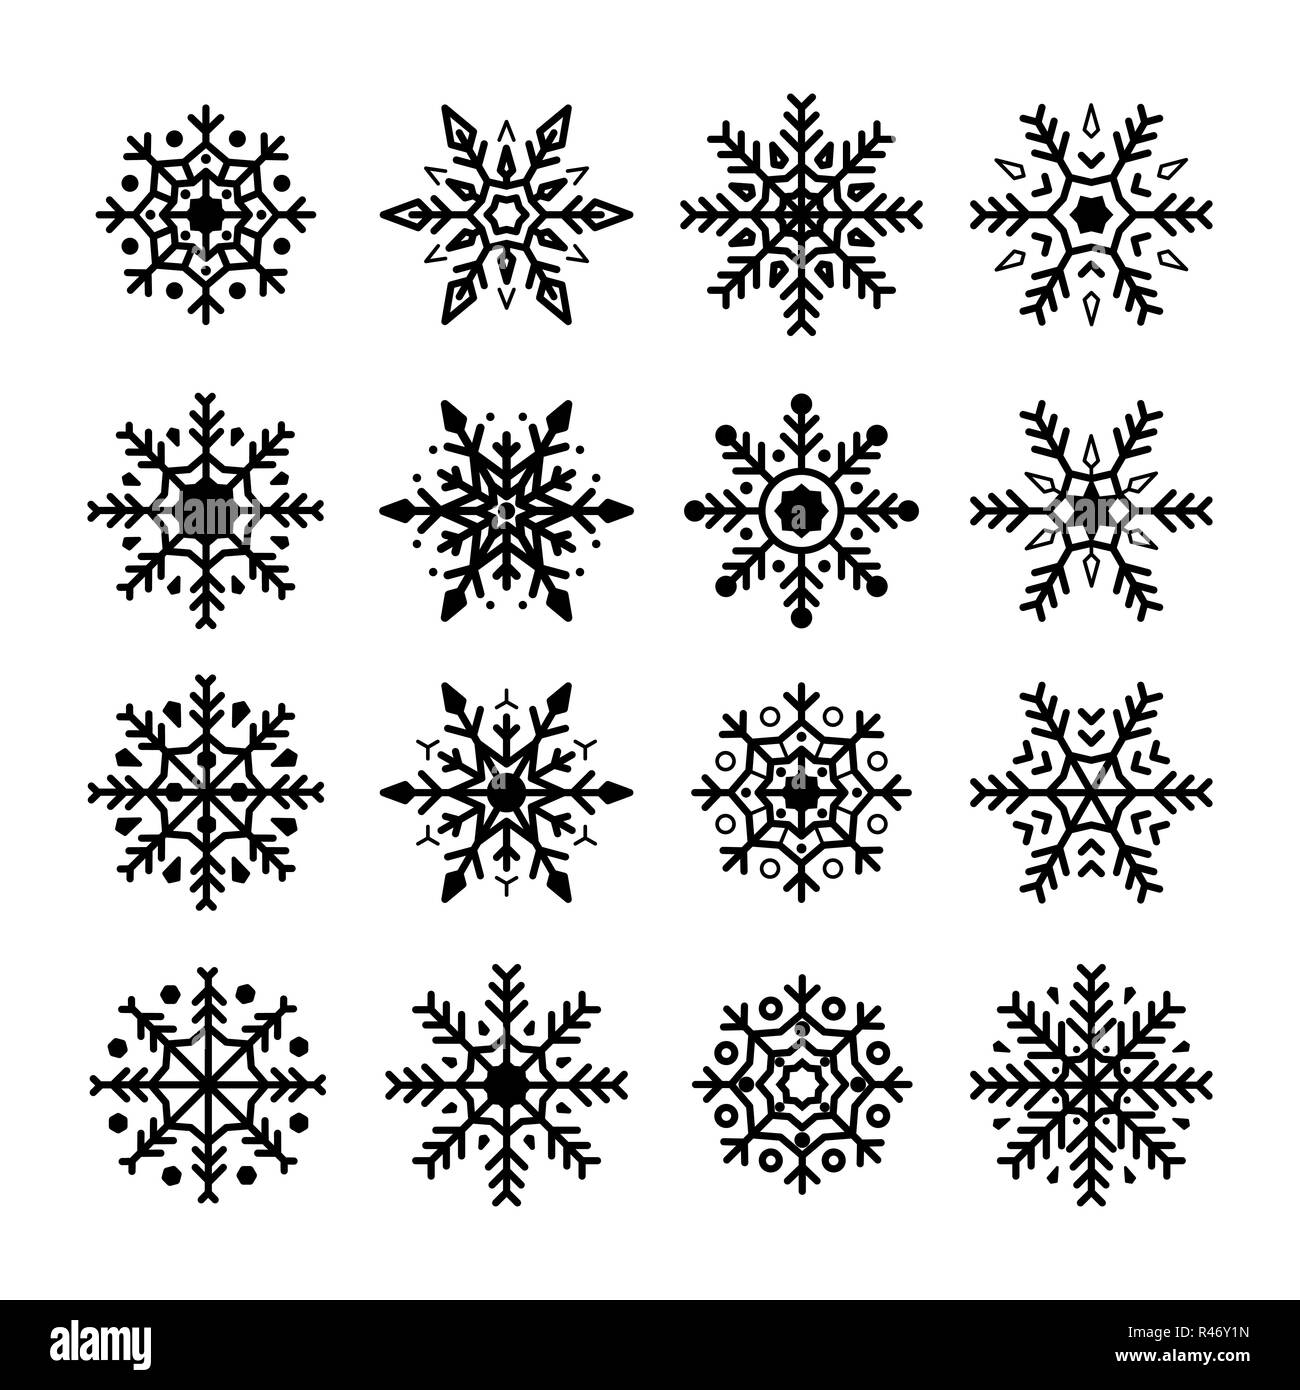 Schneeflocken eingestellt. Sammlung von Schneeflocken Silhouette. Weihnachten und Neujahr Dekoration Elemente. Vector Illustration auf weißem Hintergrund Stock Vektor